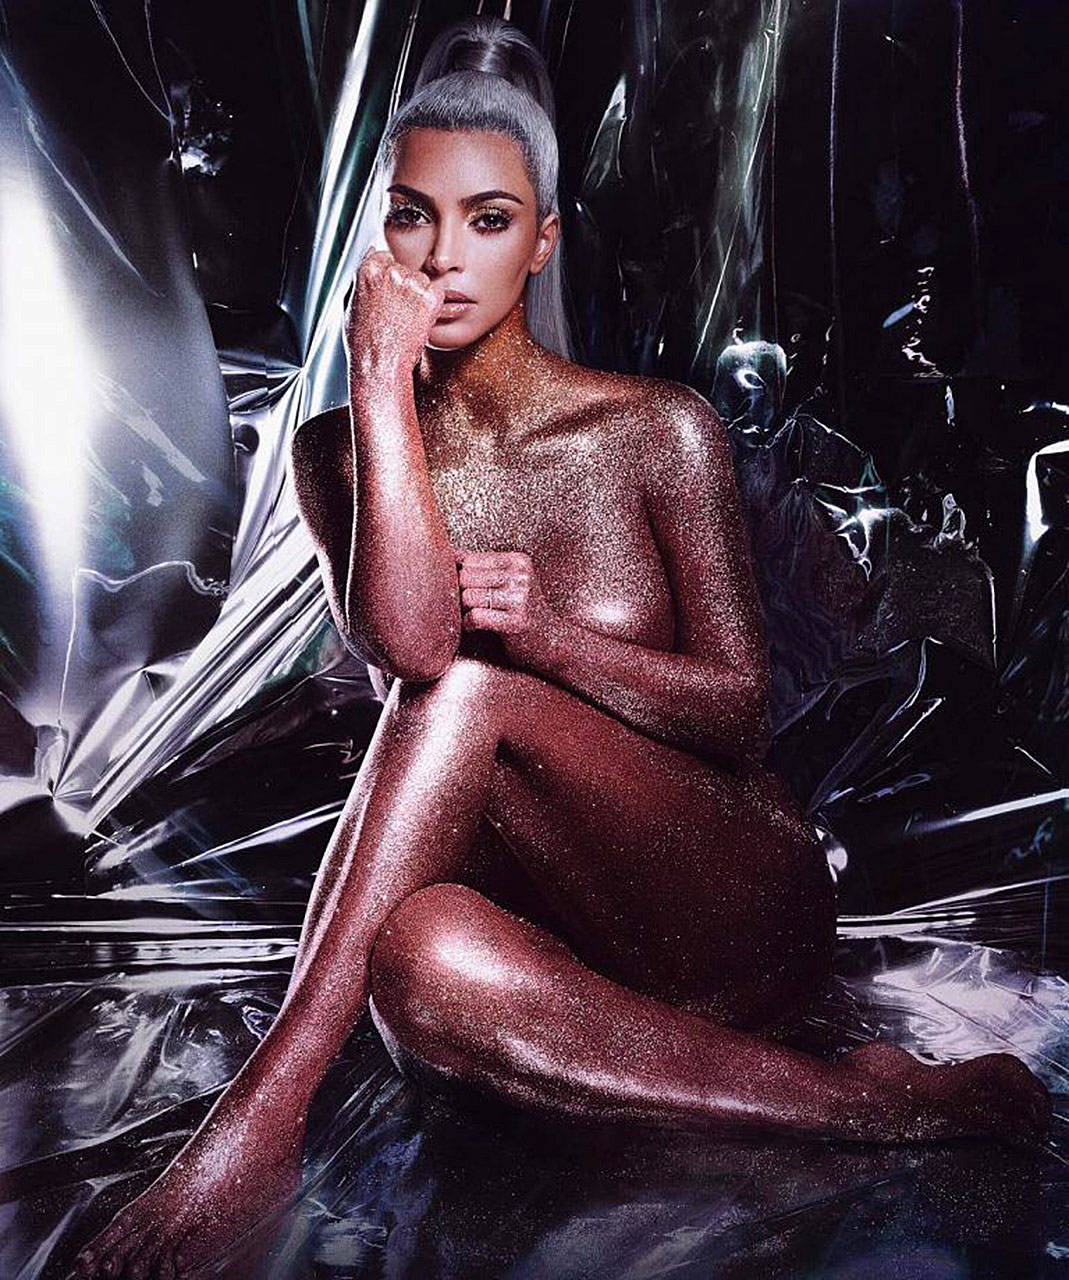 Kim Kardashian Nude With Makeup Covered Body And Halloween